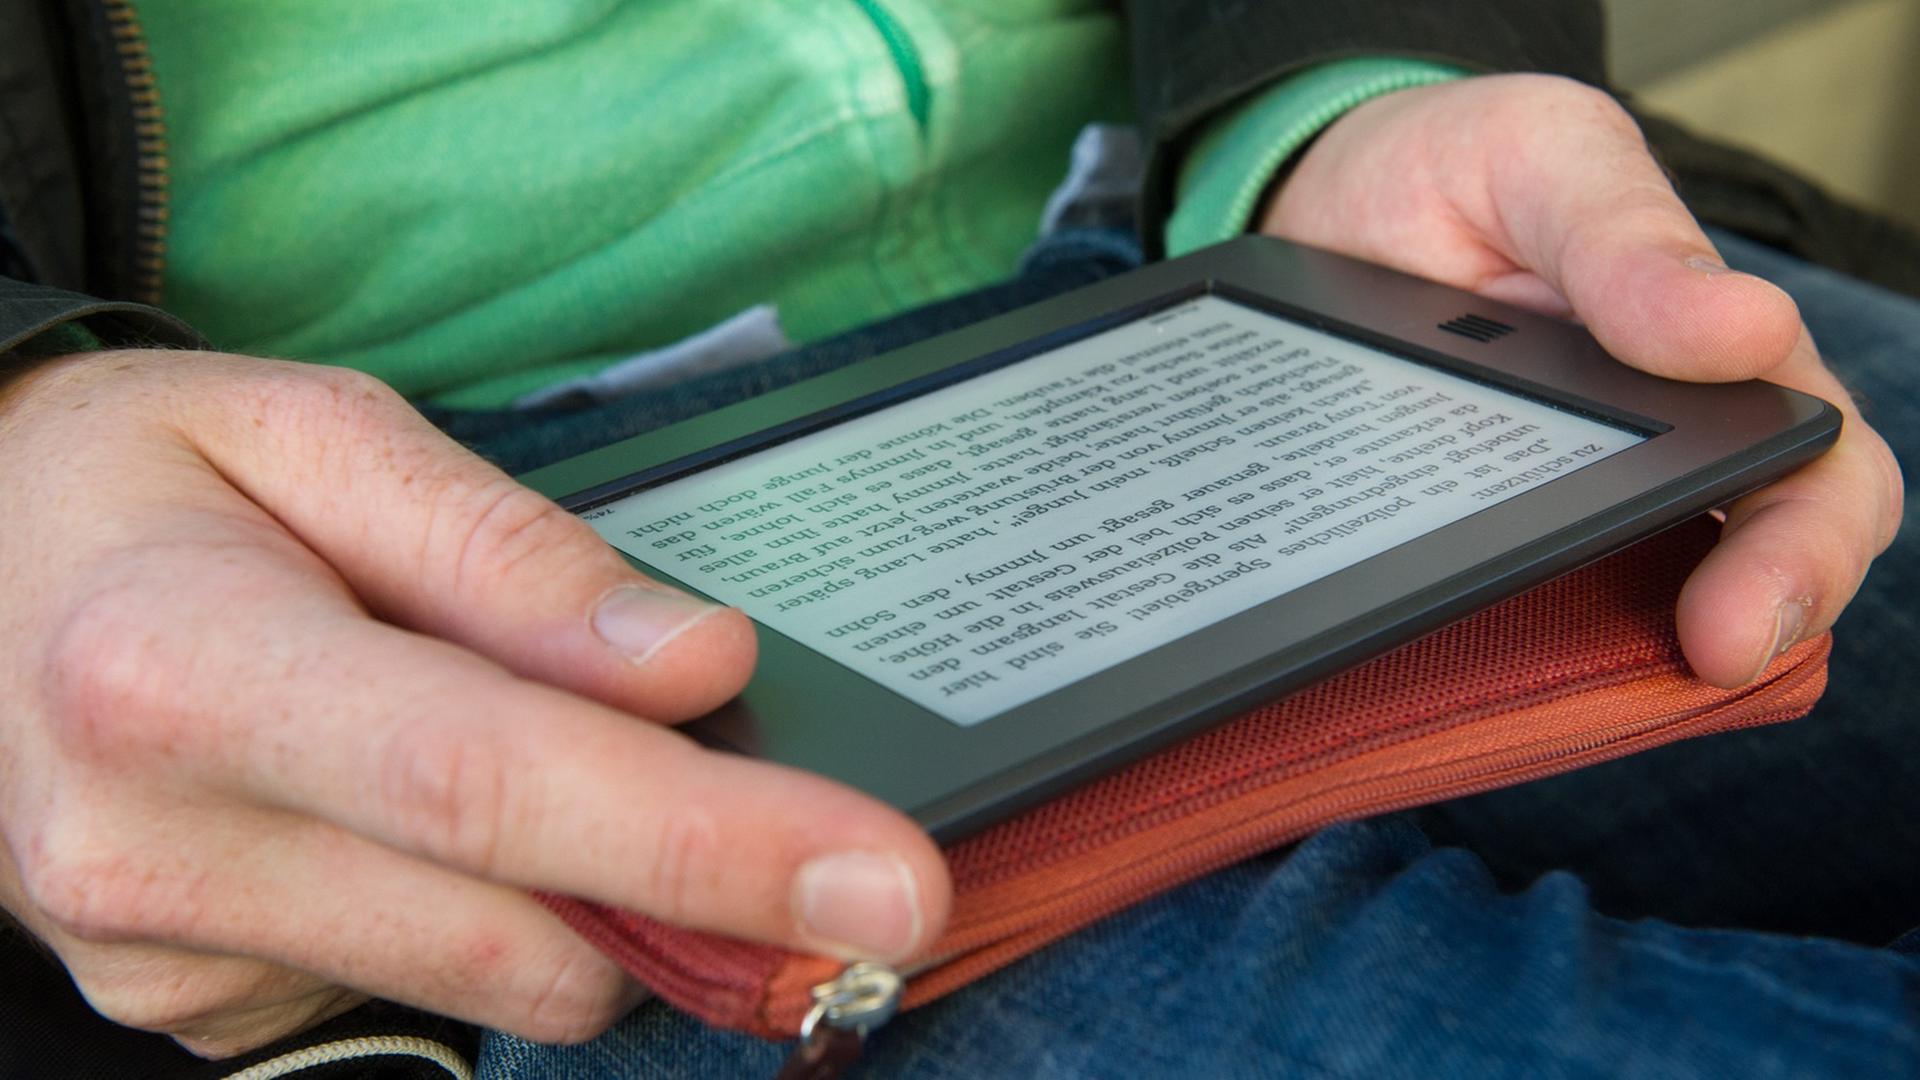 Ein Mann hält am 28.09.2012 in München (Bayern) ein elektronischen Reader der Marke Kindle in seinen Händen.